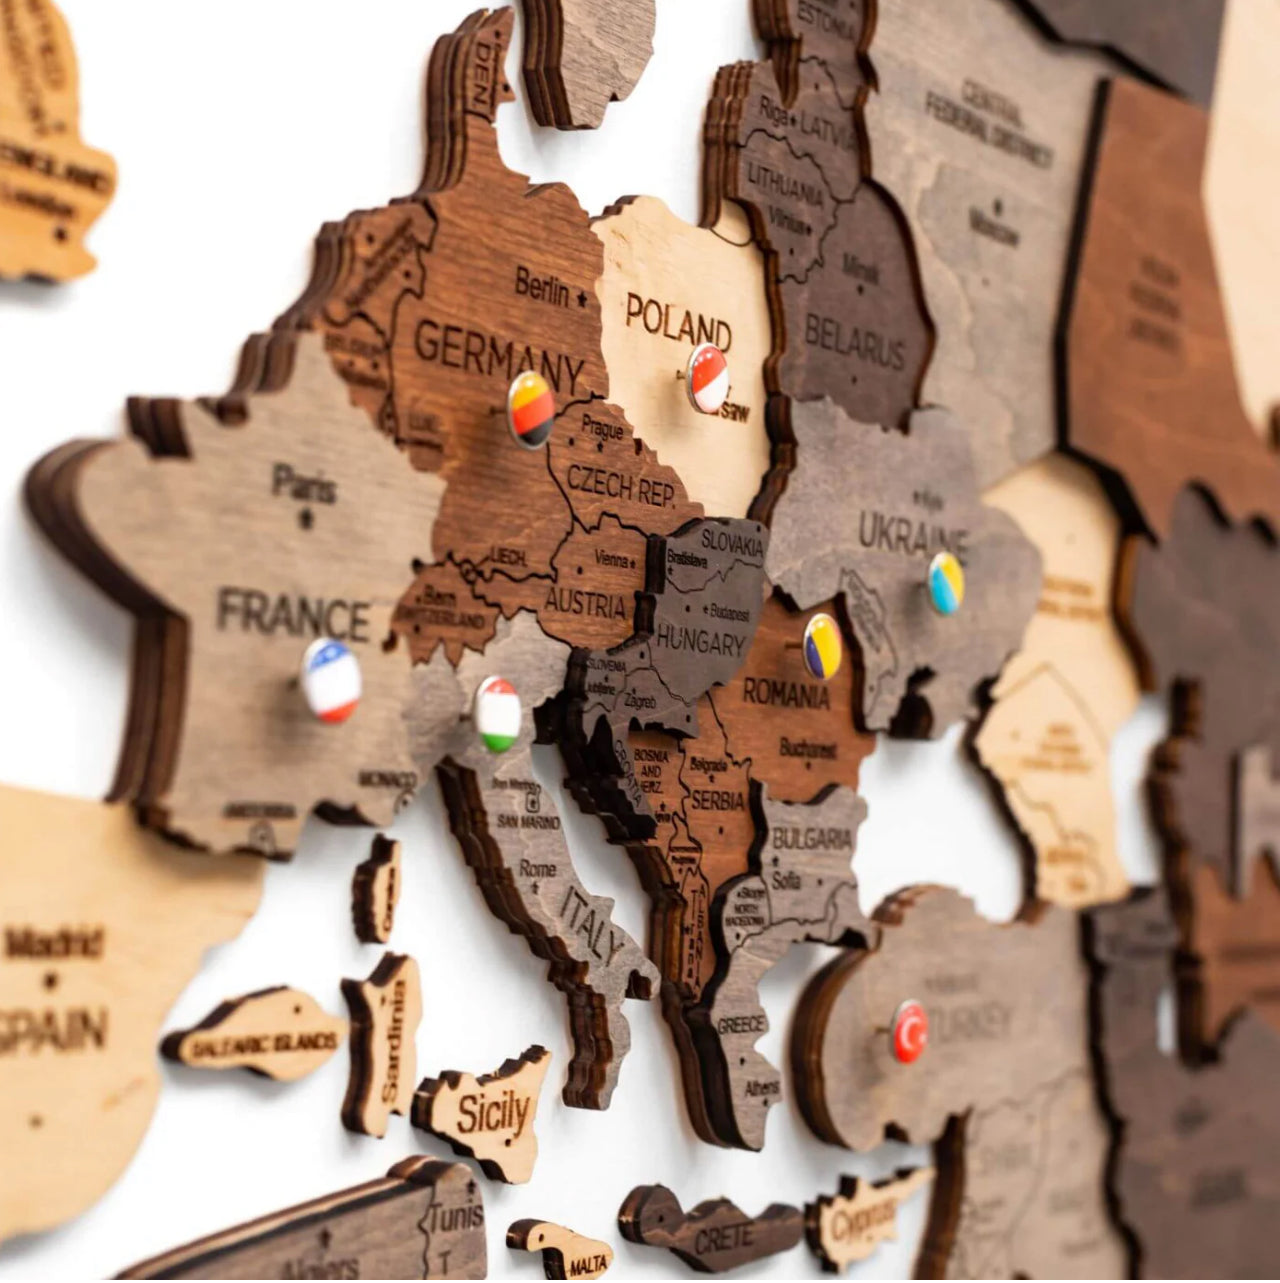 3D Mapa decorativo Multicolor em Madeira 100% natural com oferta de placa com pins de bandeiras de todos os países do mundo (287) oferta de lançamento do novo site!